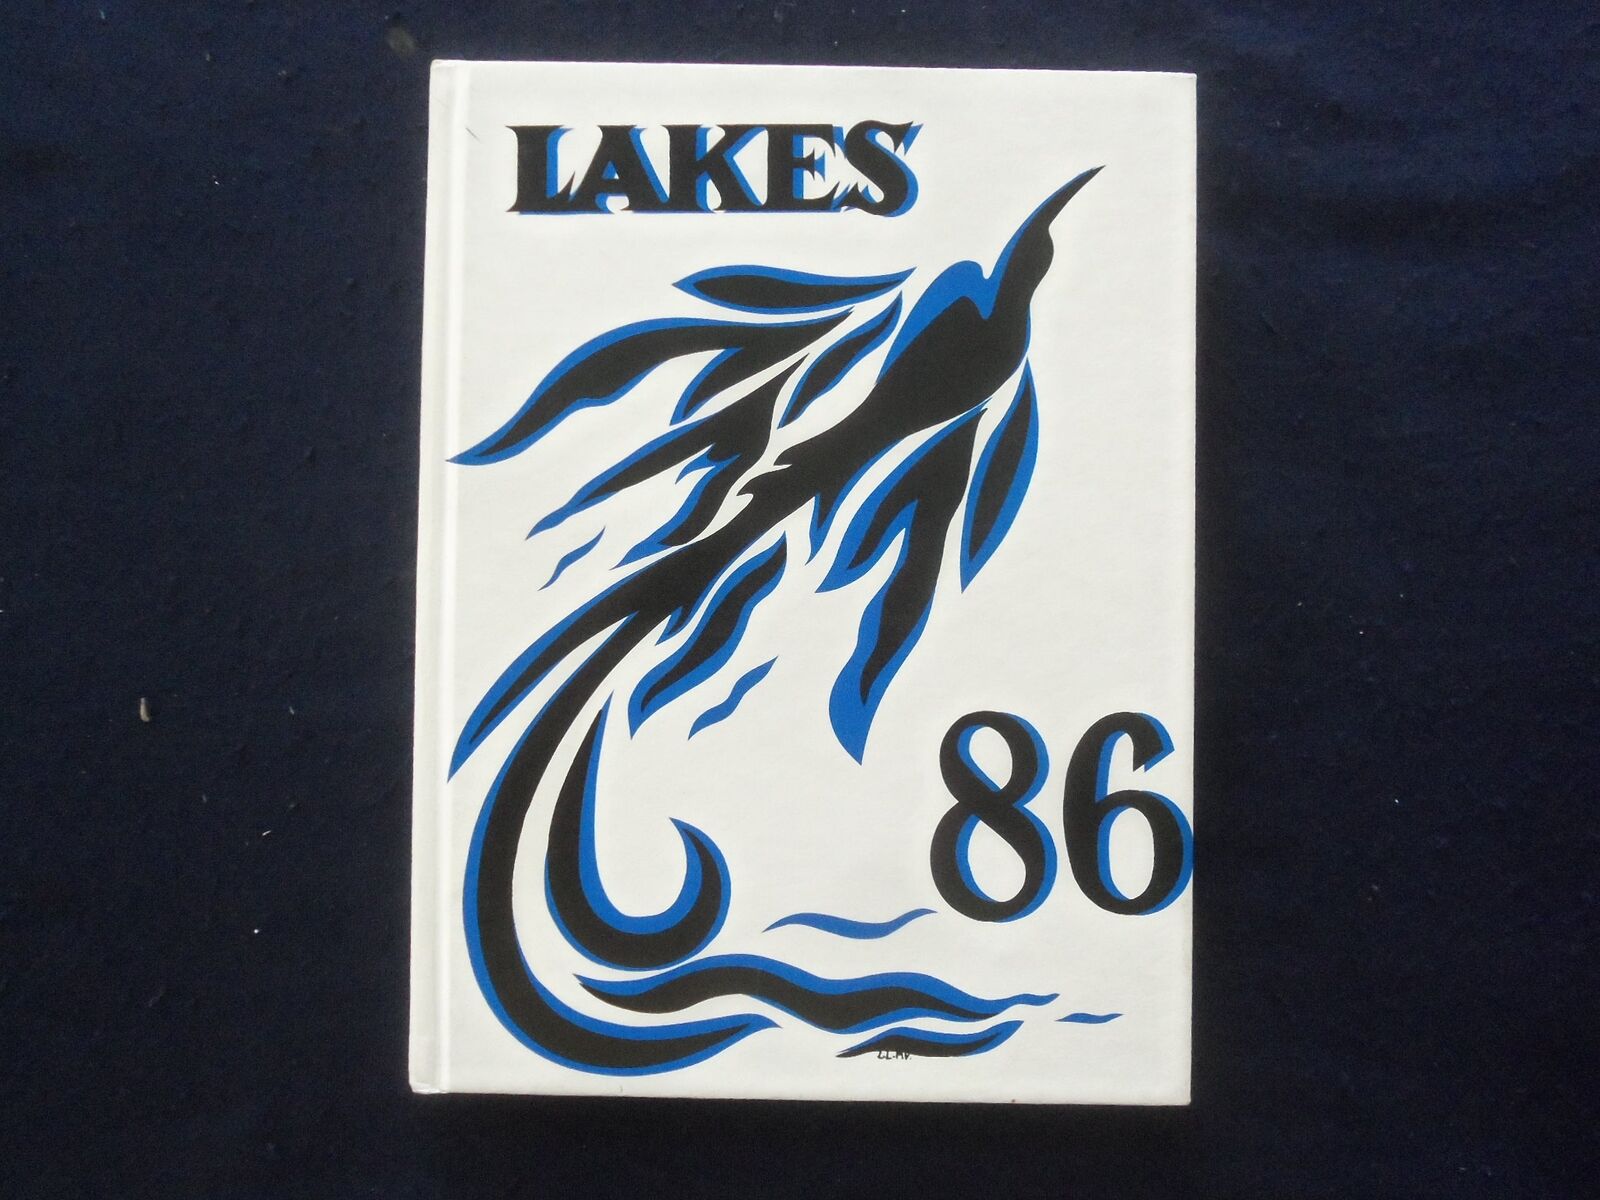 1986 LAKES MOUNTAIN LAKES HIGH SCHOOL YEARBOOK - MOUNTAIN LAKES, NJ - YB 1926Z